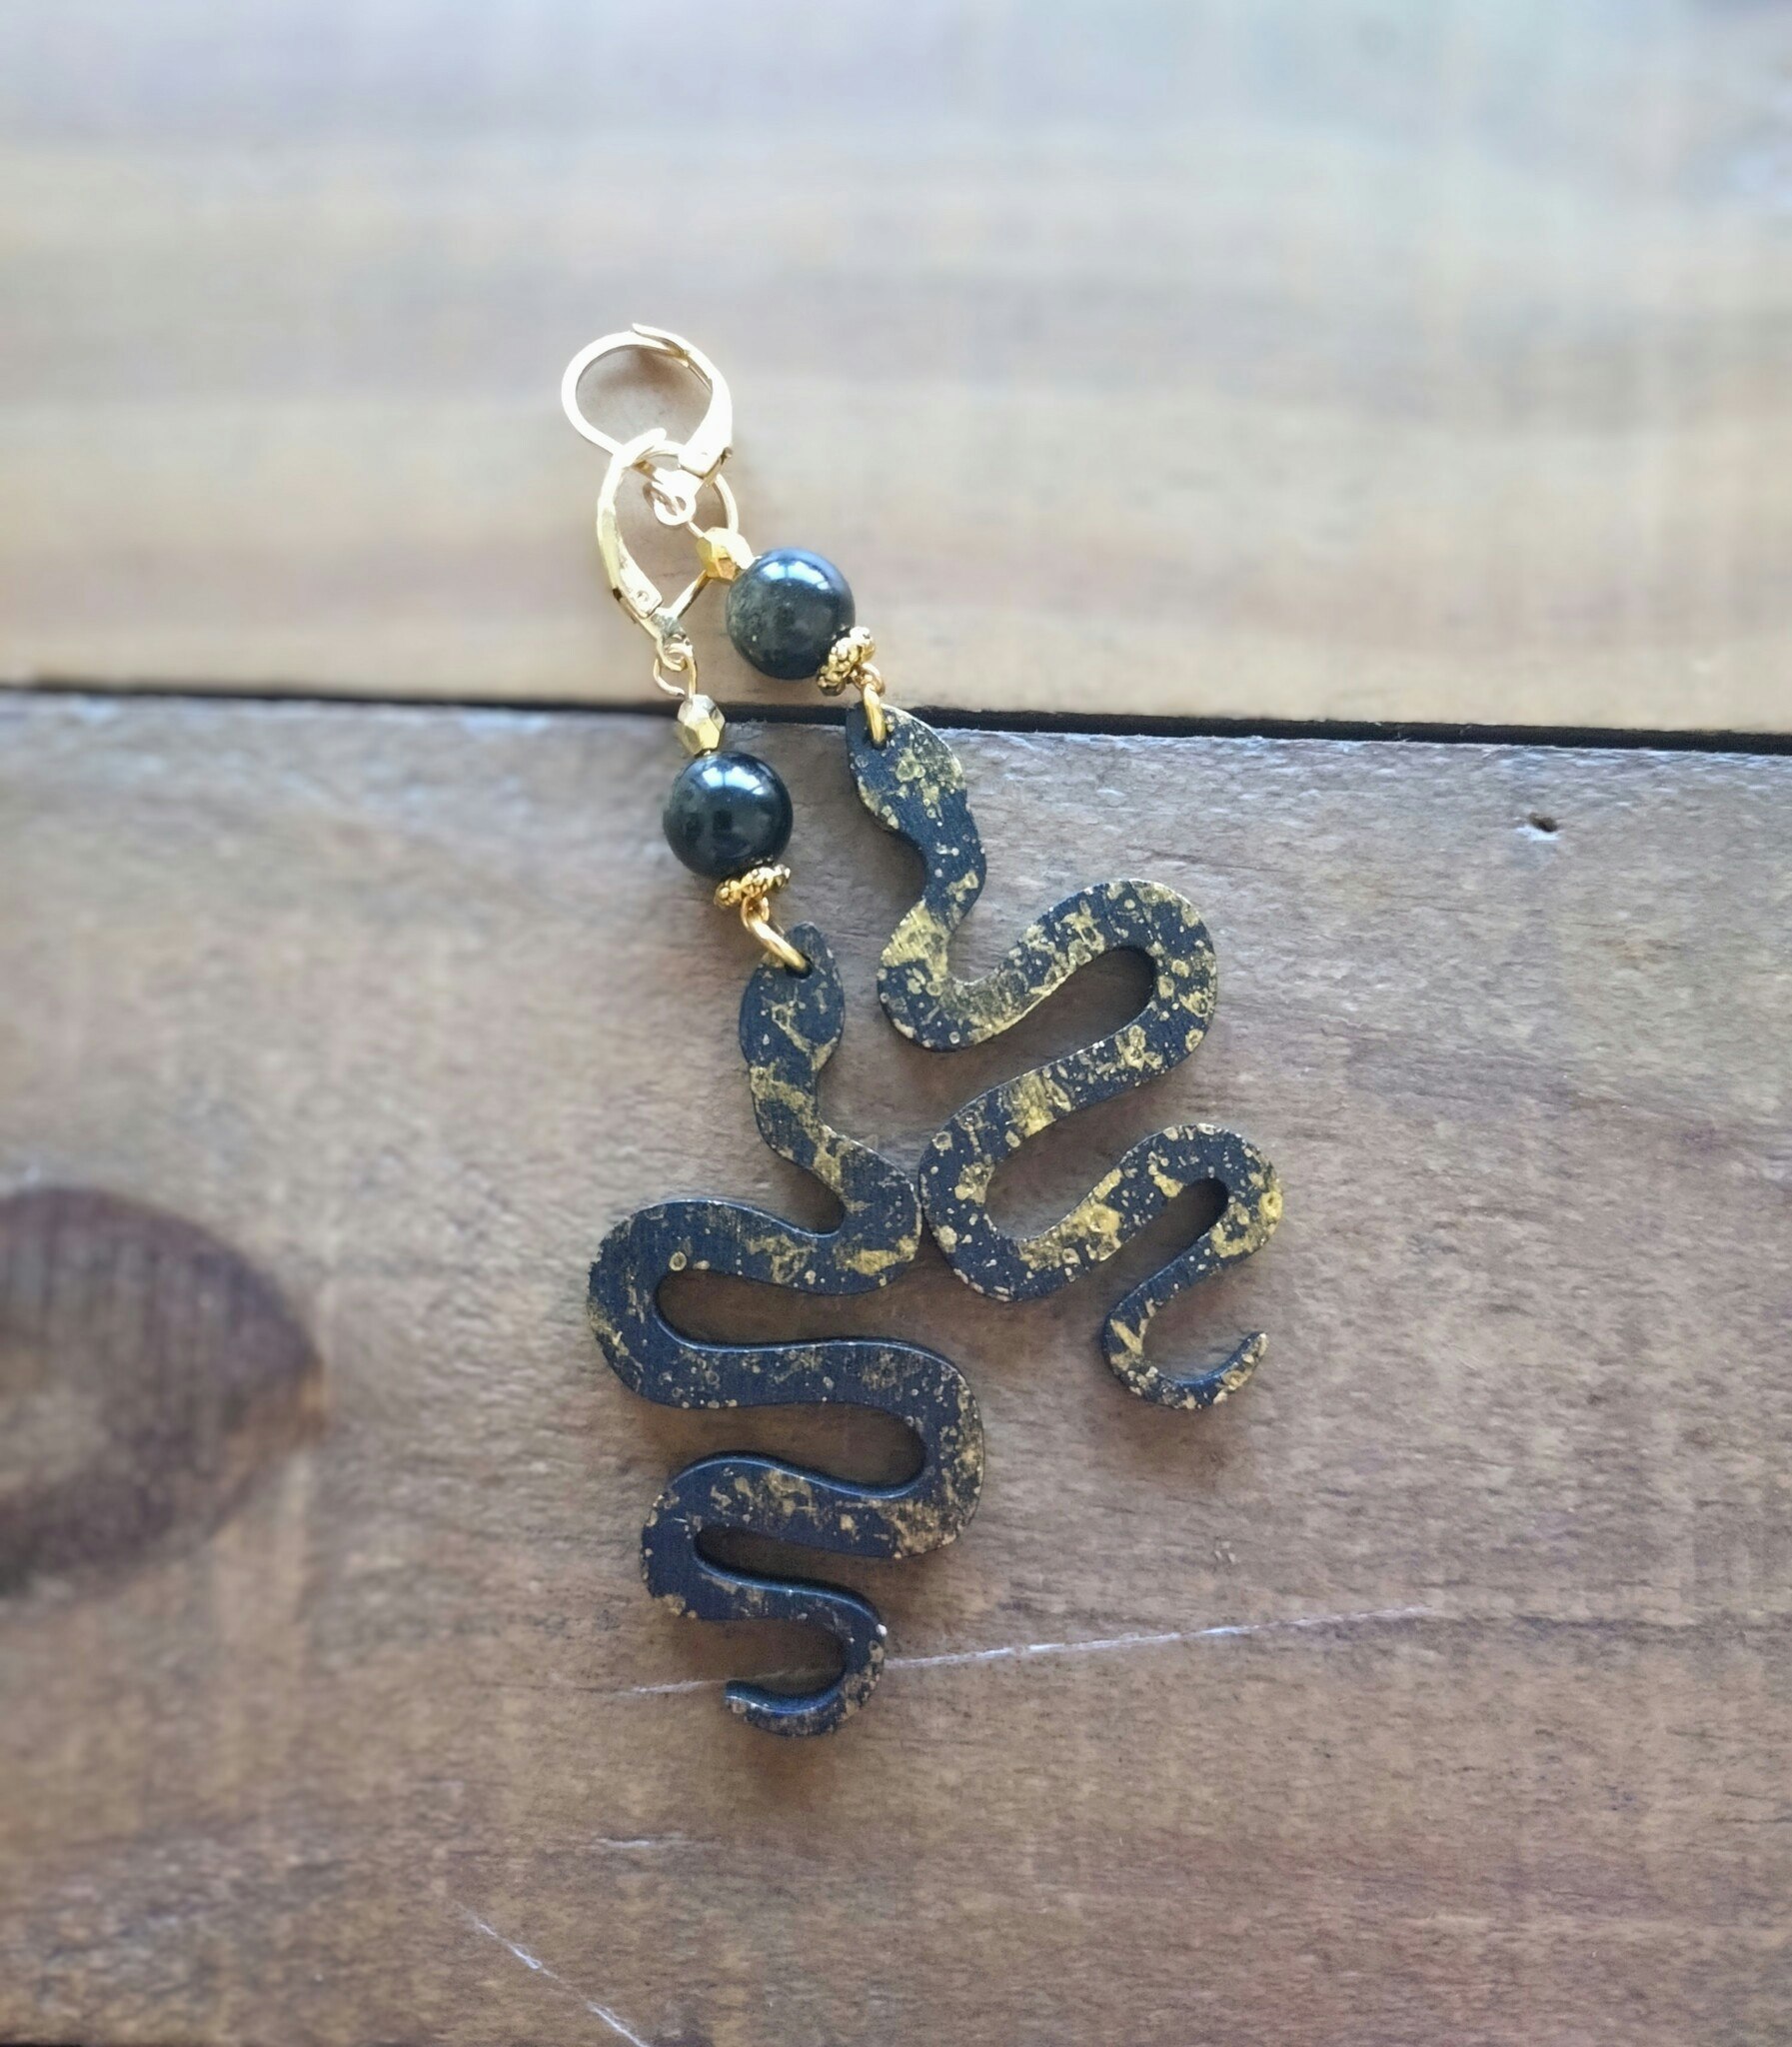 Örhängen med Guldobsidian, slingrande ormar och guldfärgade detaljer